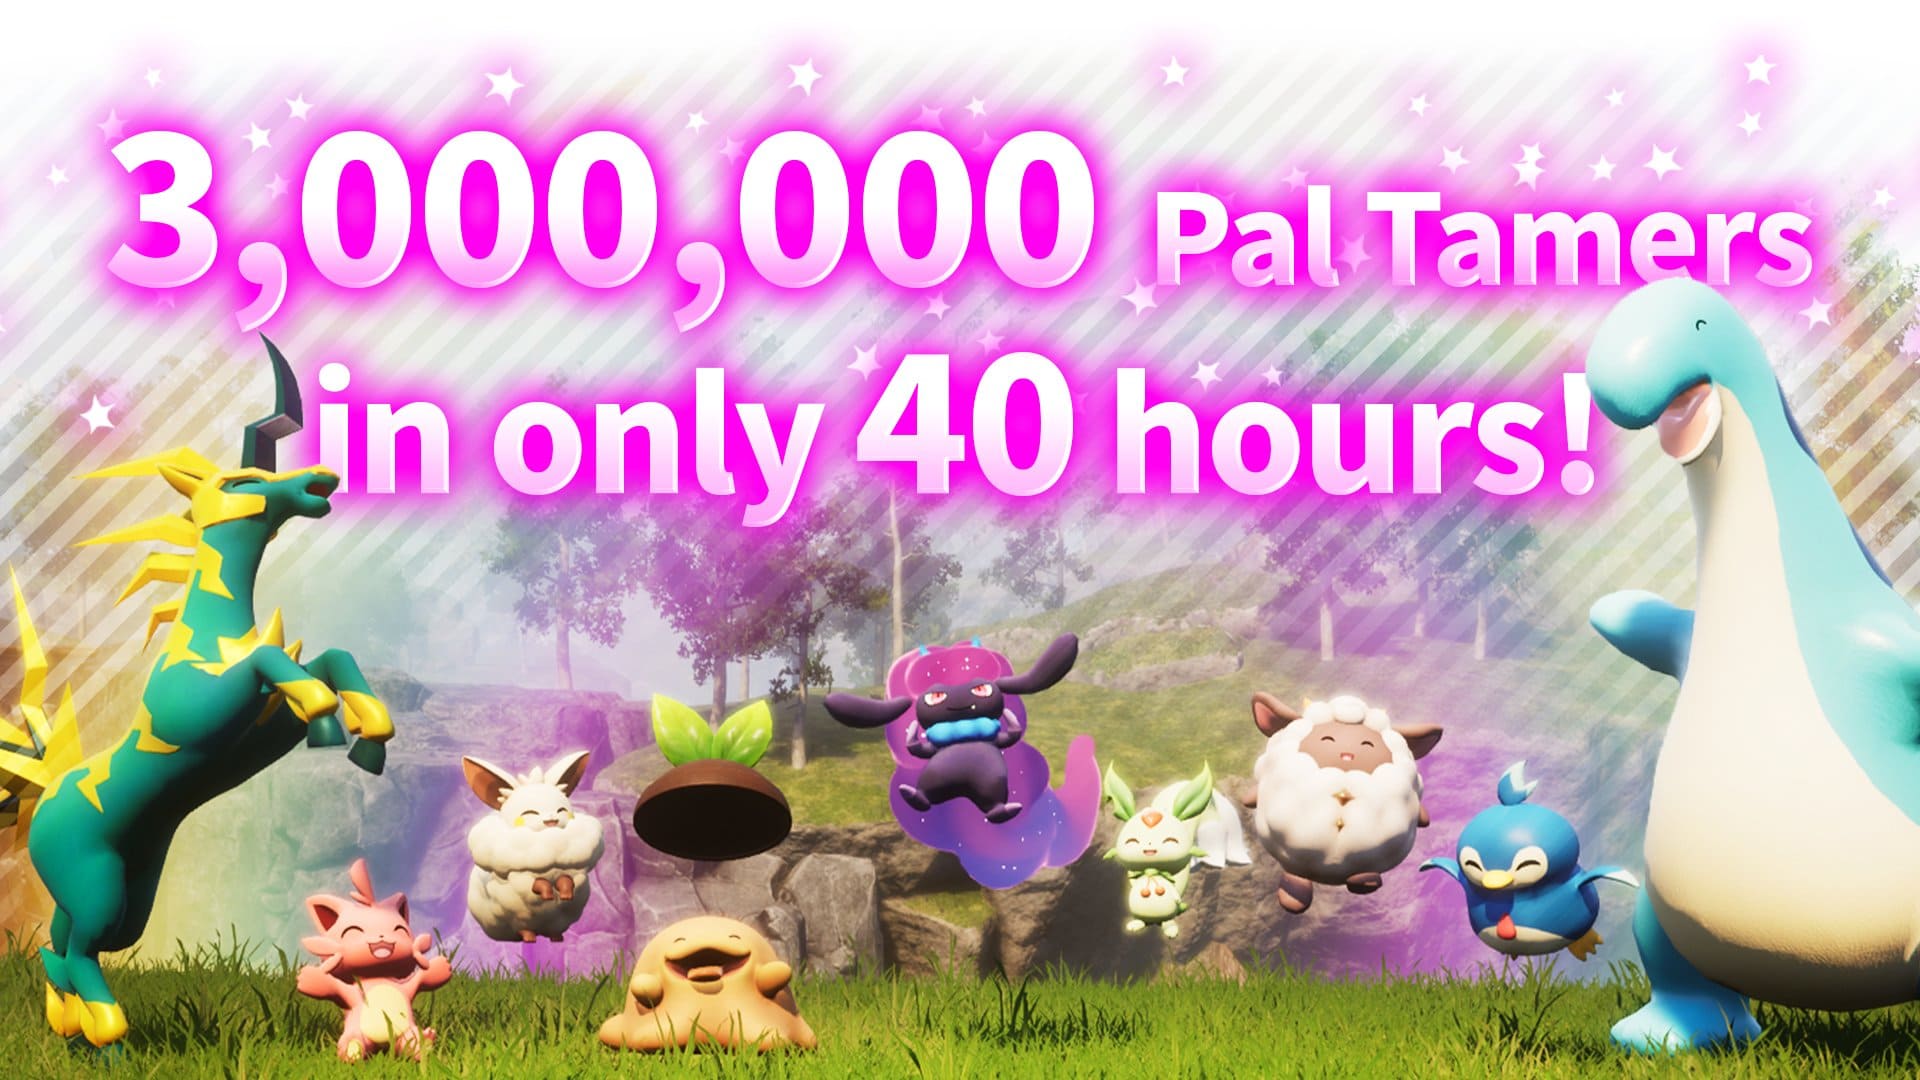 فروش ۳ میلیونی بازی Palworld در ۴۰ ساعت